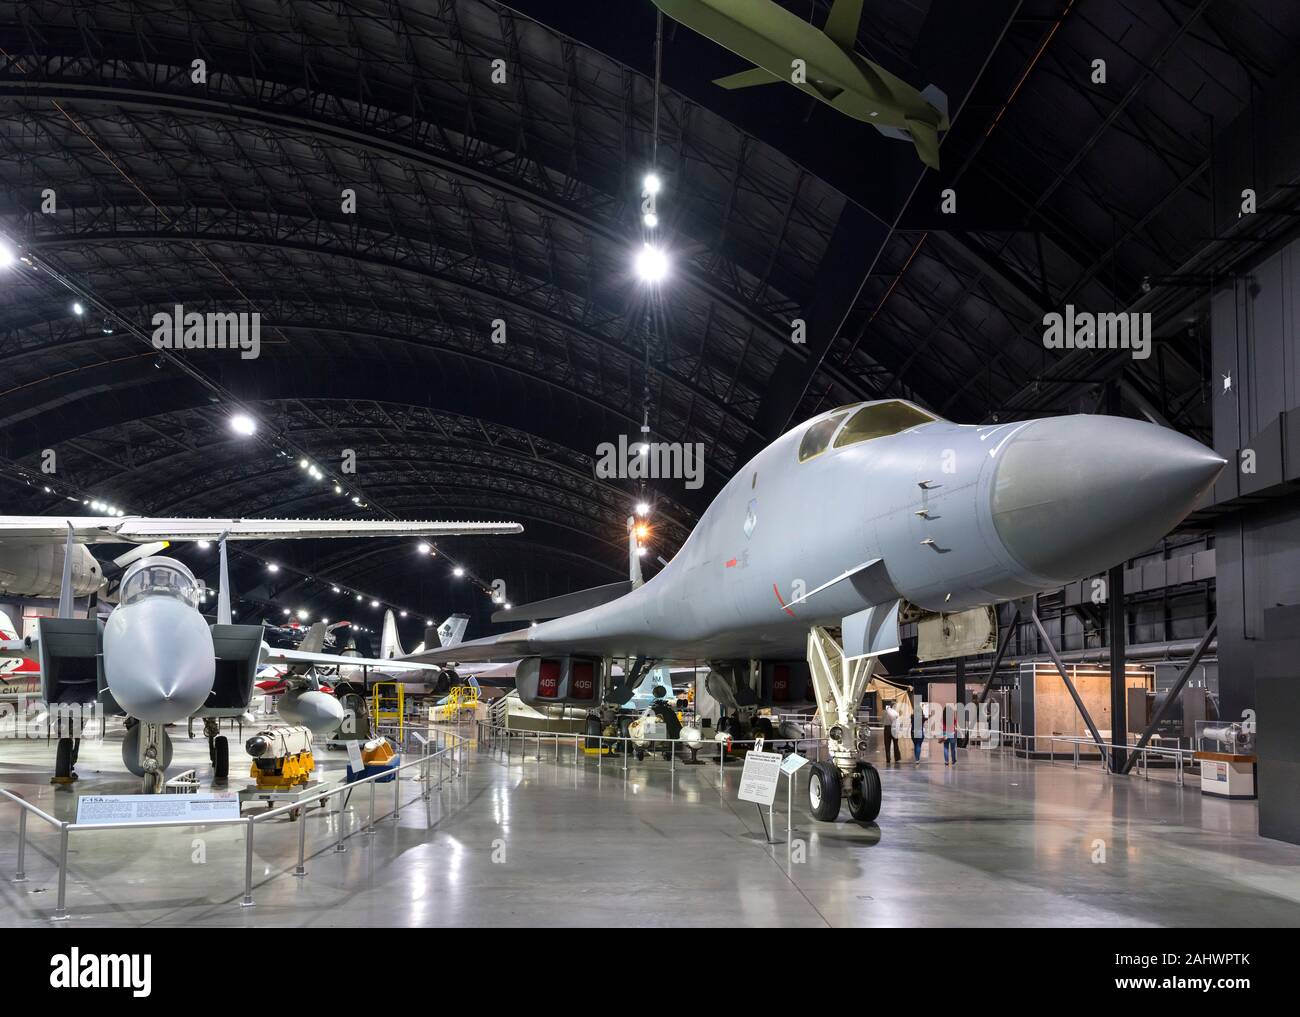 Guerra fría con un avión Boeing B-1B Lancer bombardero de ala de barrido hacia la derecha y un McDonnell Douglas F-15A Eagle a la derecha , el Museo Nacional de la Fuerza Aérea de los Estados Unidos (anteriormente el museo de la Fuerza Aérea de los Estados Unidos), Dayton, Ohio, EE.UU. Foto de stock